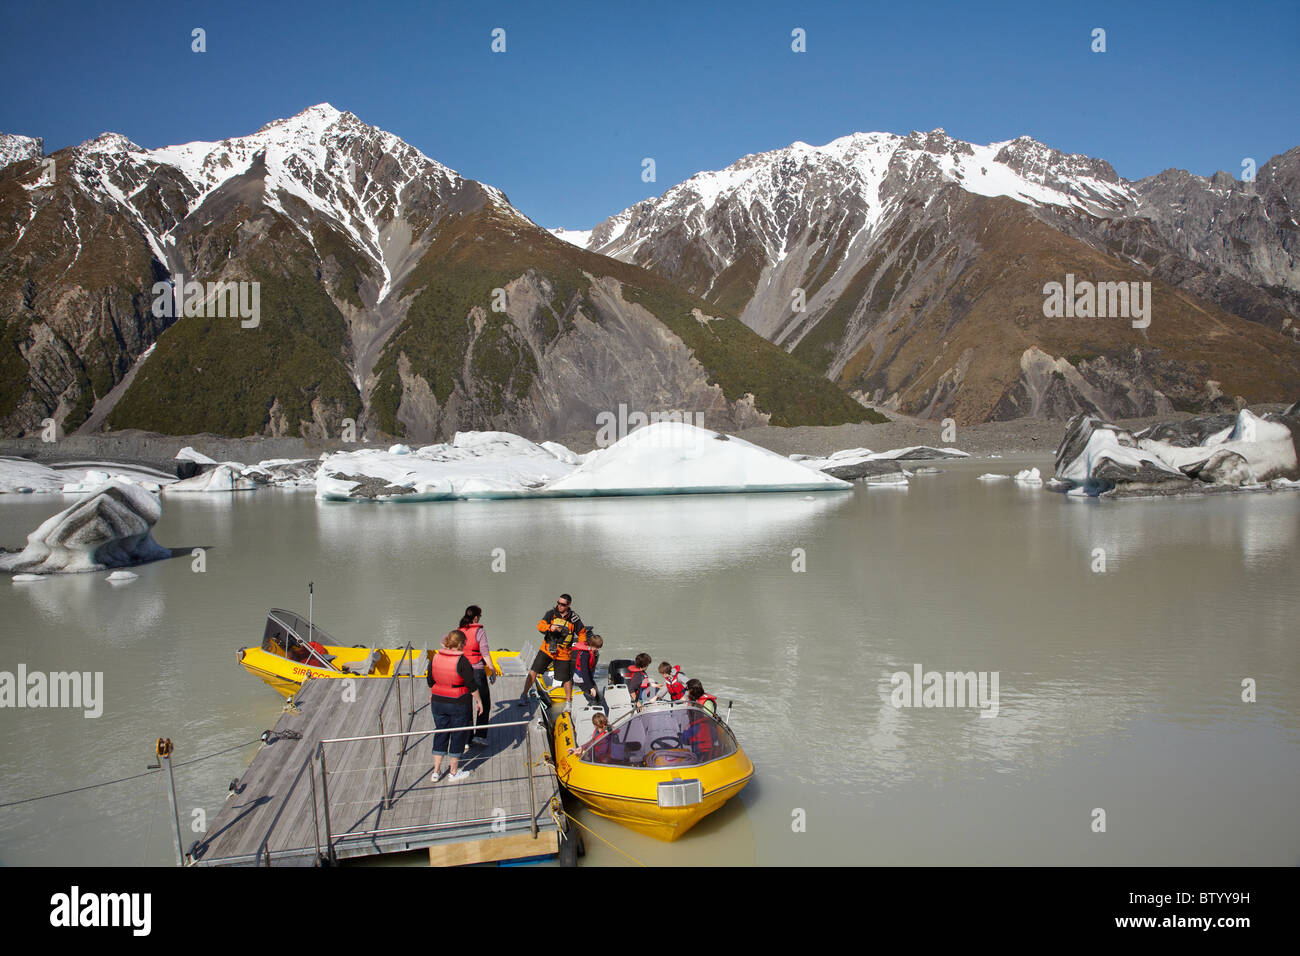 Les touristes en bateau, explorateurs de glacier et des icebergs, Glacier Tasman Lac Aoraki / Terminal, Mt Cook National Park, New Zealand Banque D'Images